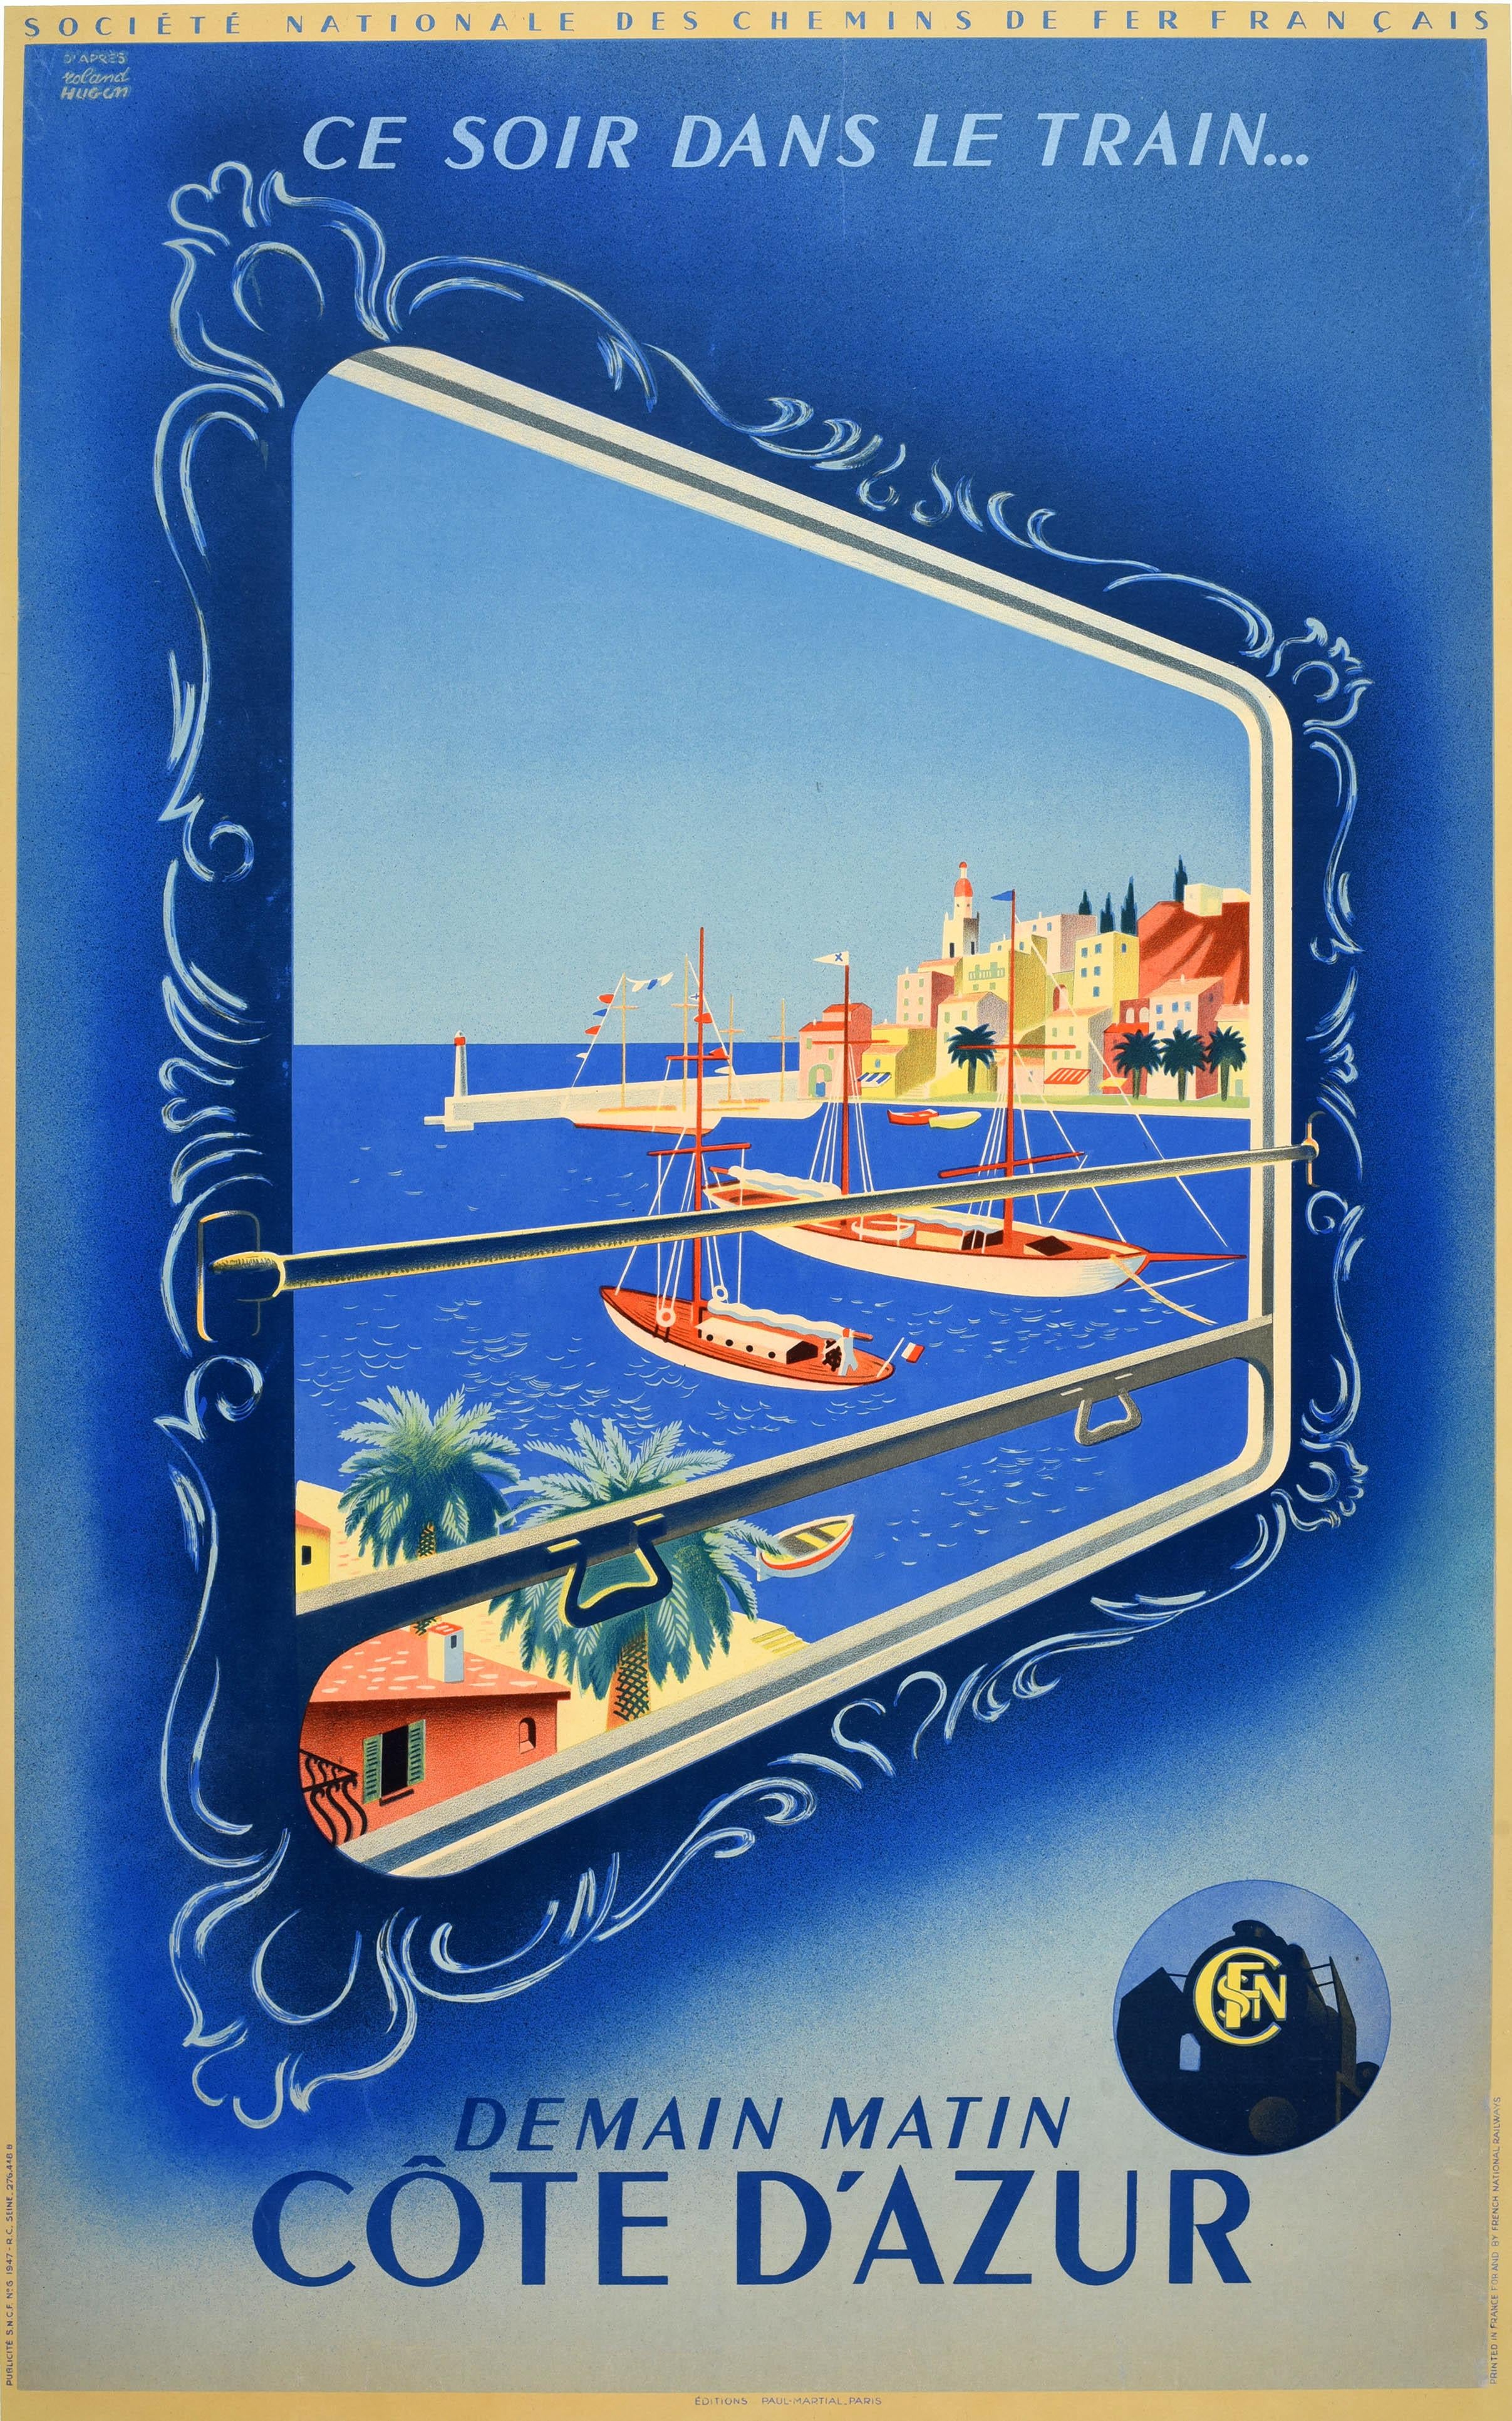 Roland Hugon Print - Original Vintage Railway Poster Ce Soir Dans Le Train Cote D'Azur French Riviera